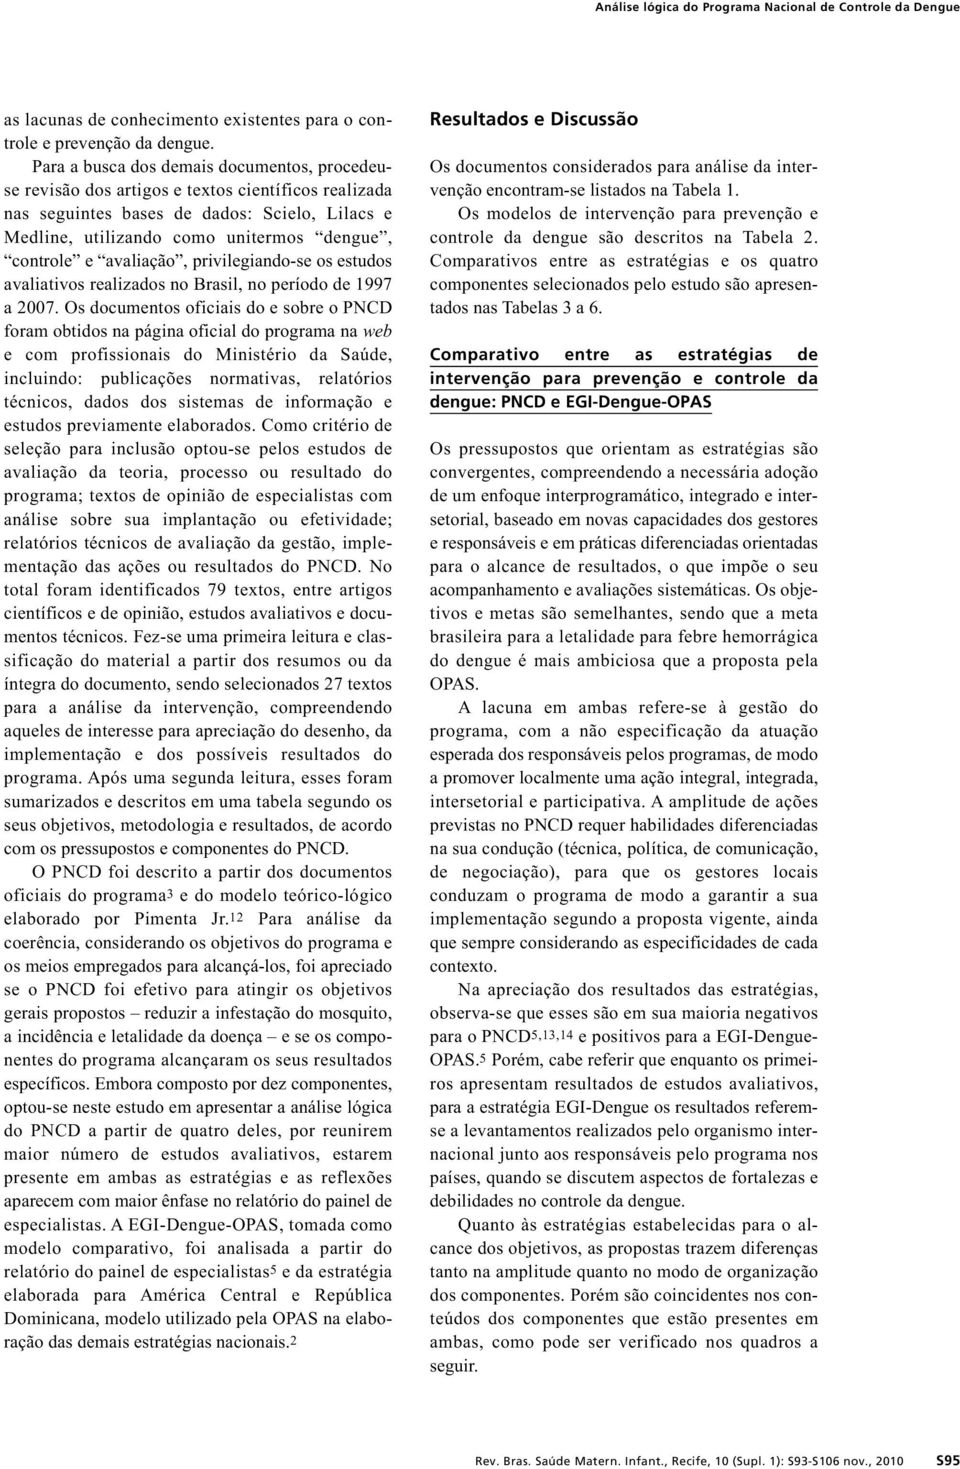 avaliação, privilegiando-se os estudos avaliativos realizados no Brasil, no período de 1997 a 2007.